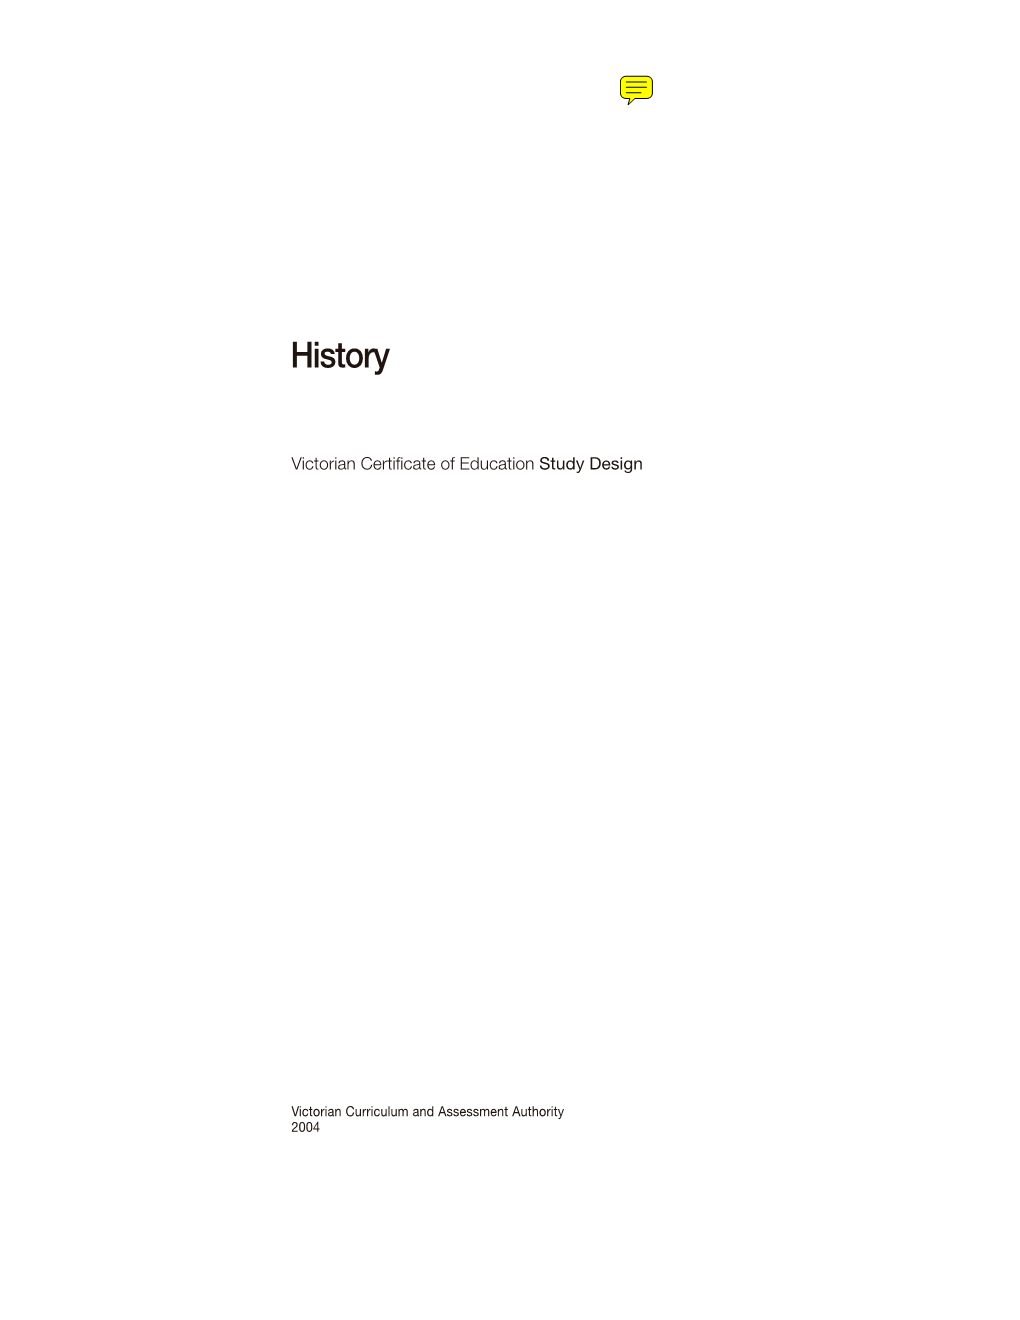 VCE History Study Design